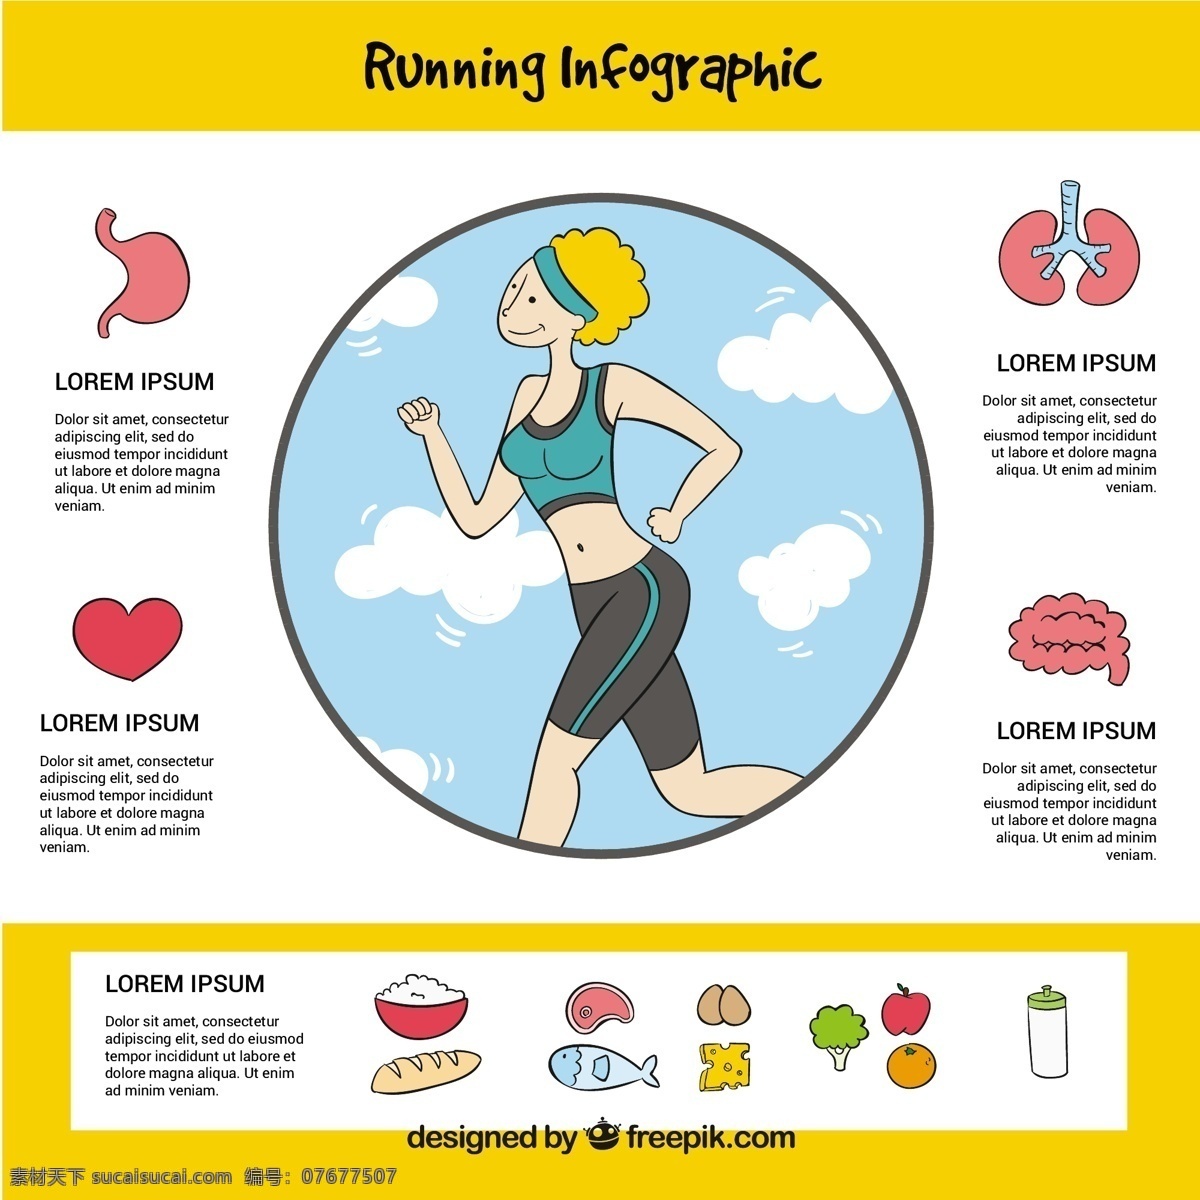 跑步 好处 infography 图表 手 模板 运动 健身 手绘 健康 运行 工艺 图纸 图表模板 数据 信息 健康信息